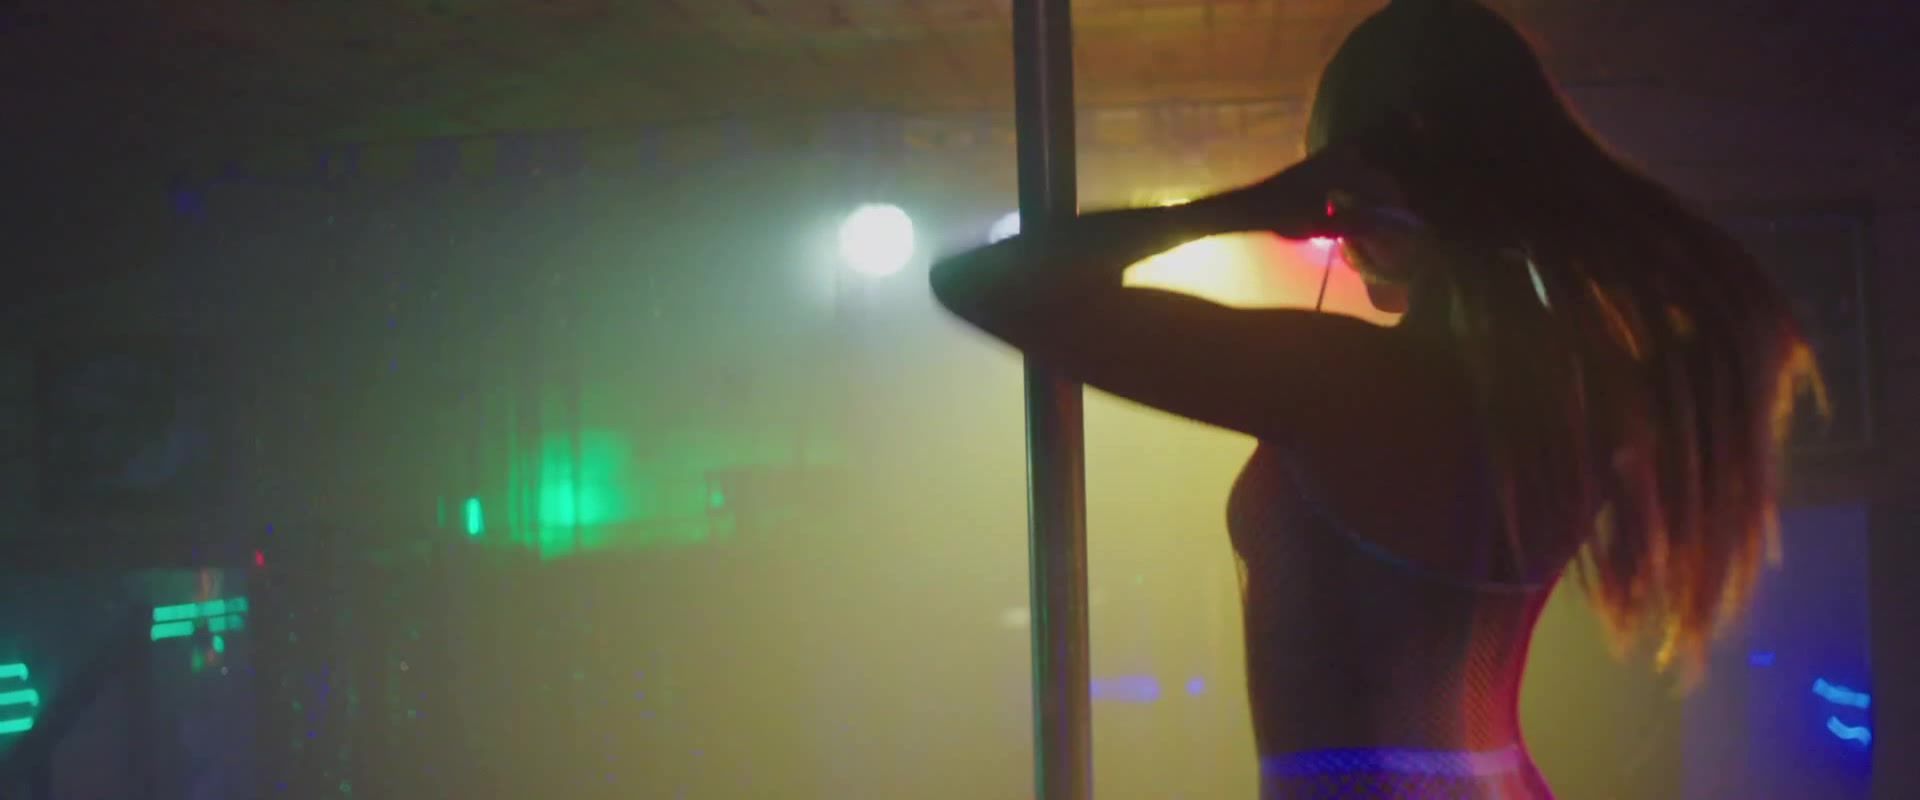 Blow Celebs Sex scene of Paz de la Huerta, Dianna Agron nude - Bare (2015) Classy